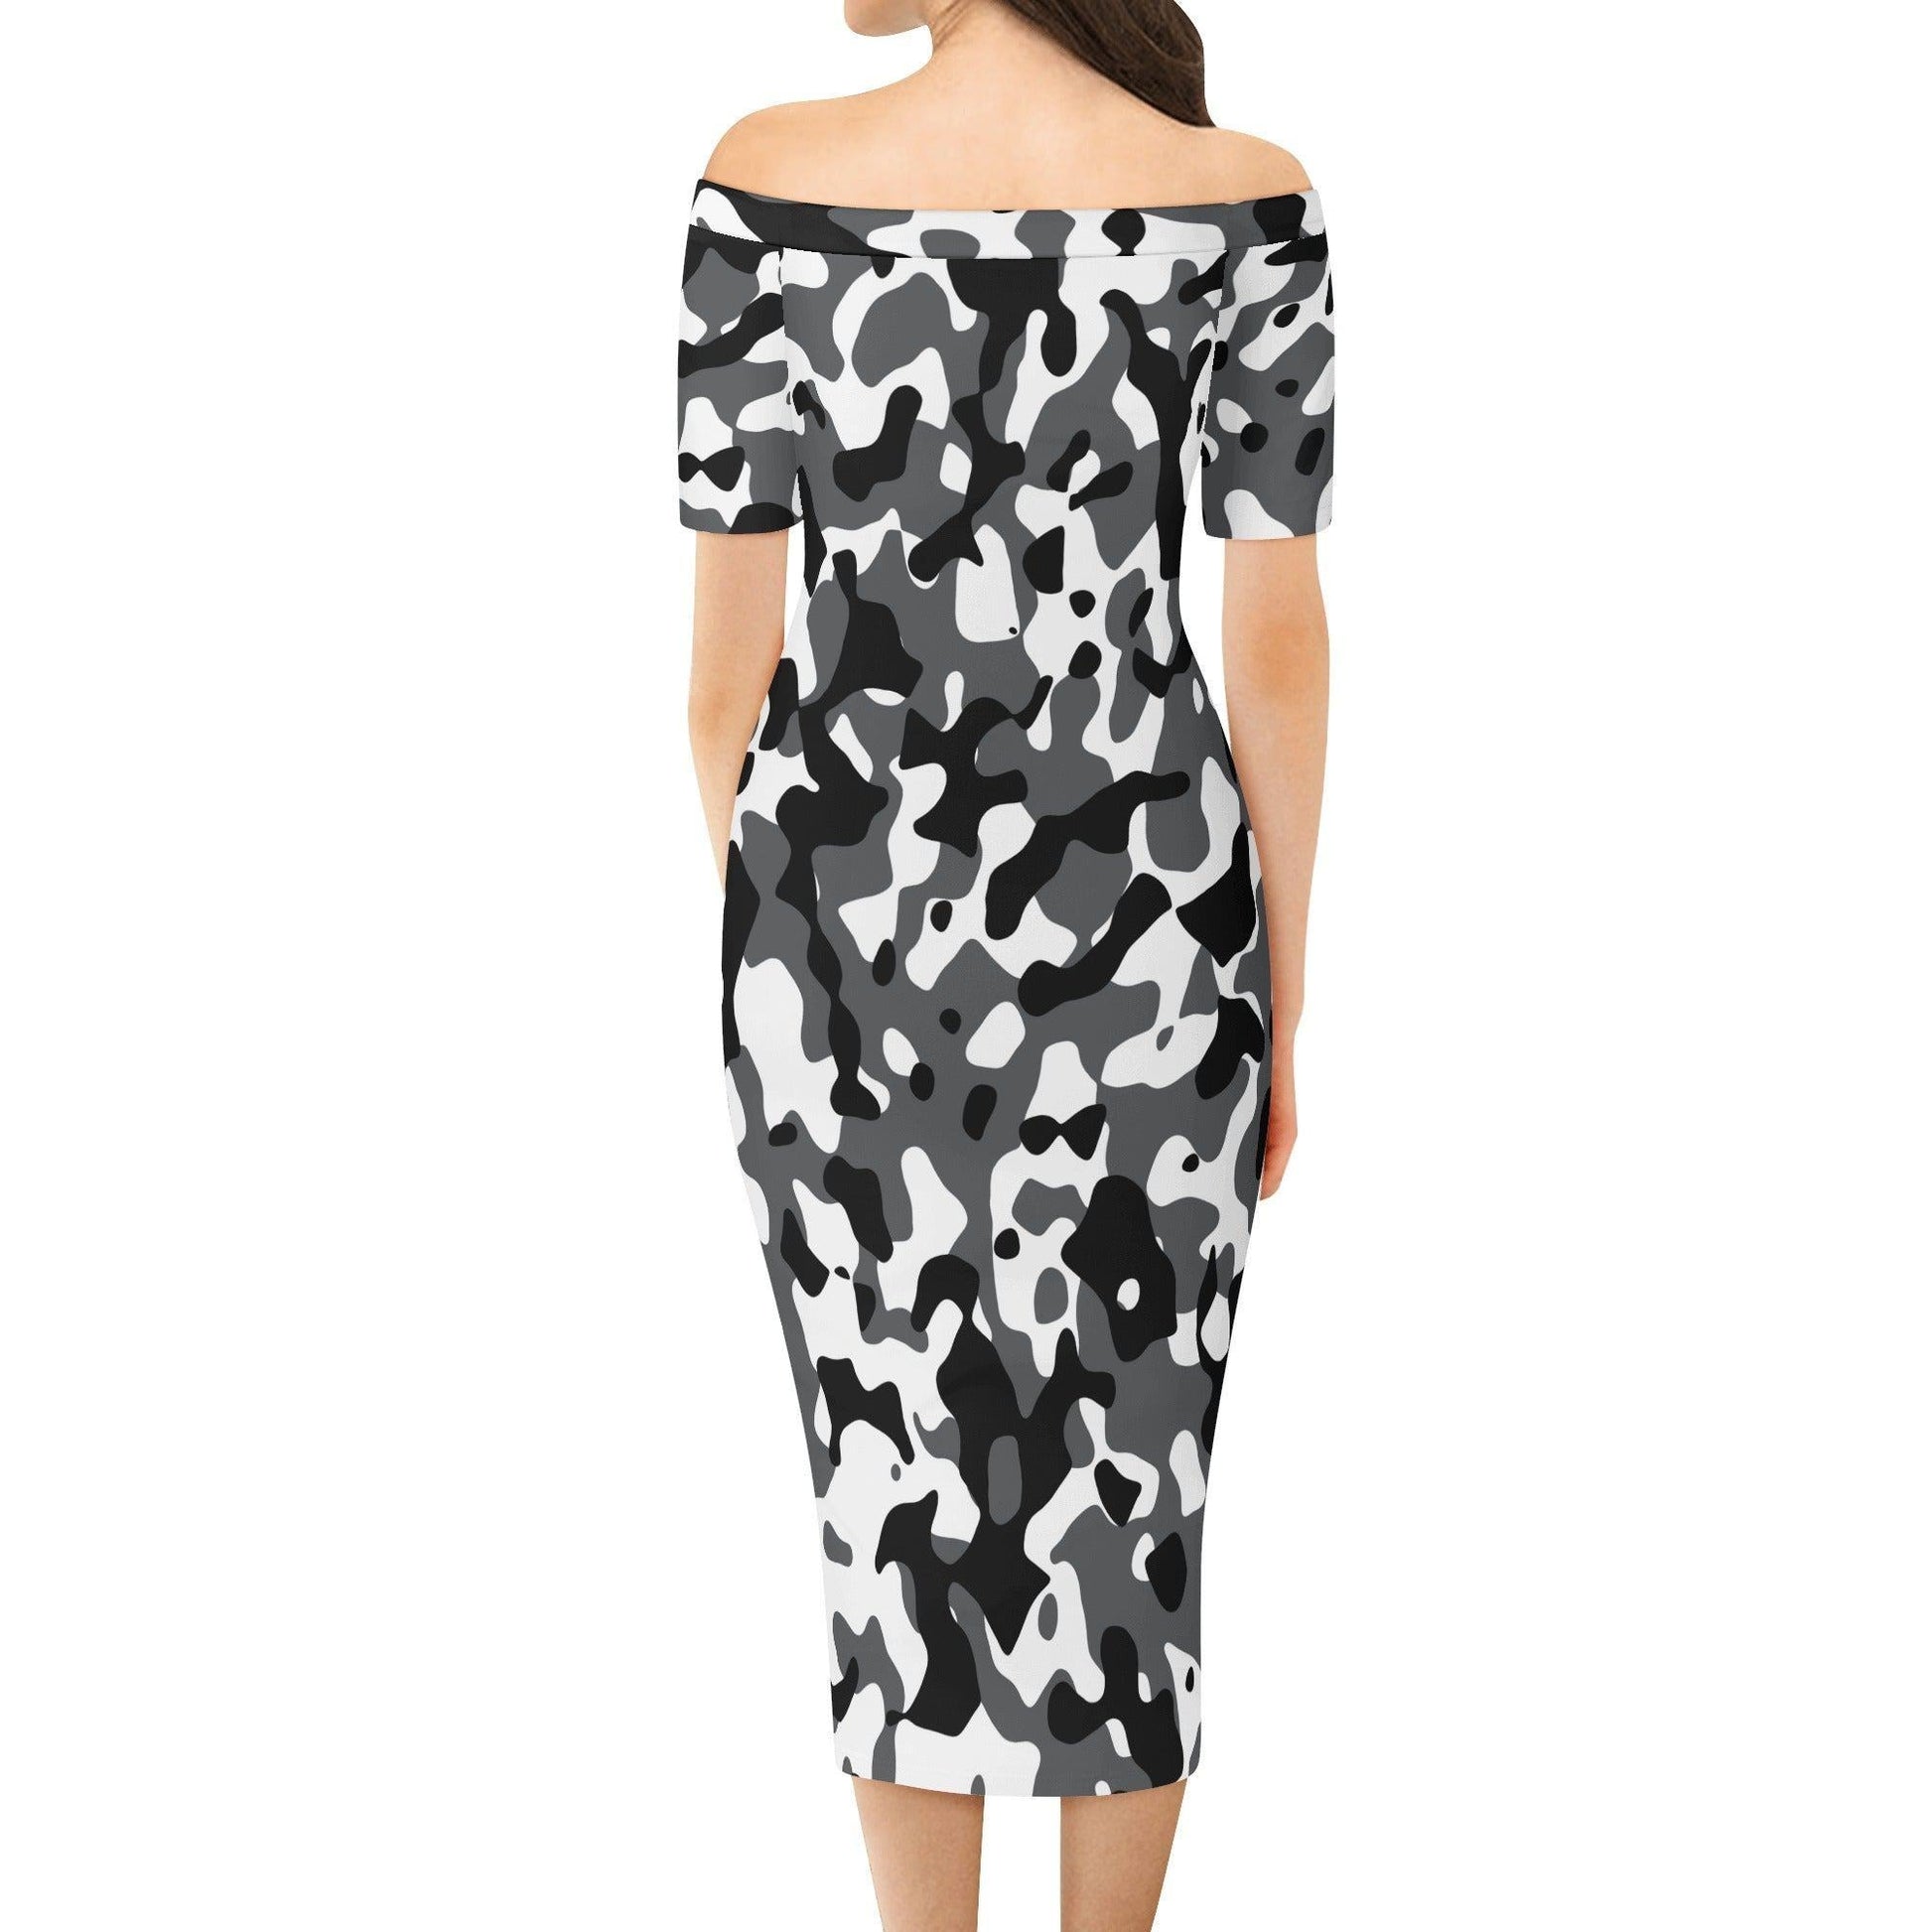 Schwarz Grau Weiß Camouflage Off-Shoulder-Kleid -- Schwarz Grau Weiß Camouflage Off-Shoulder-Kleid - undefined Off-Shoulder-Kleid | JLR Design